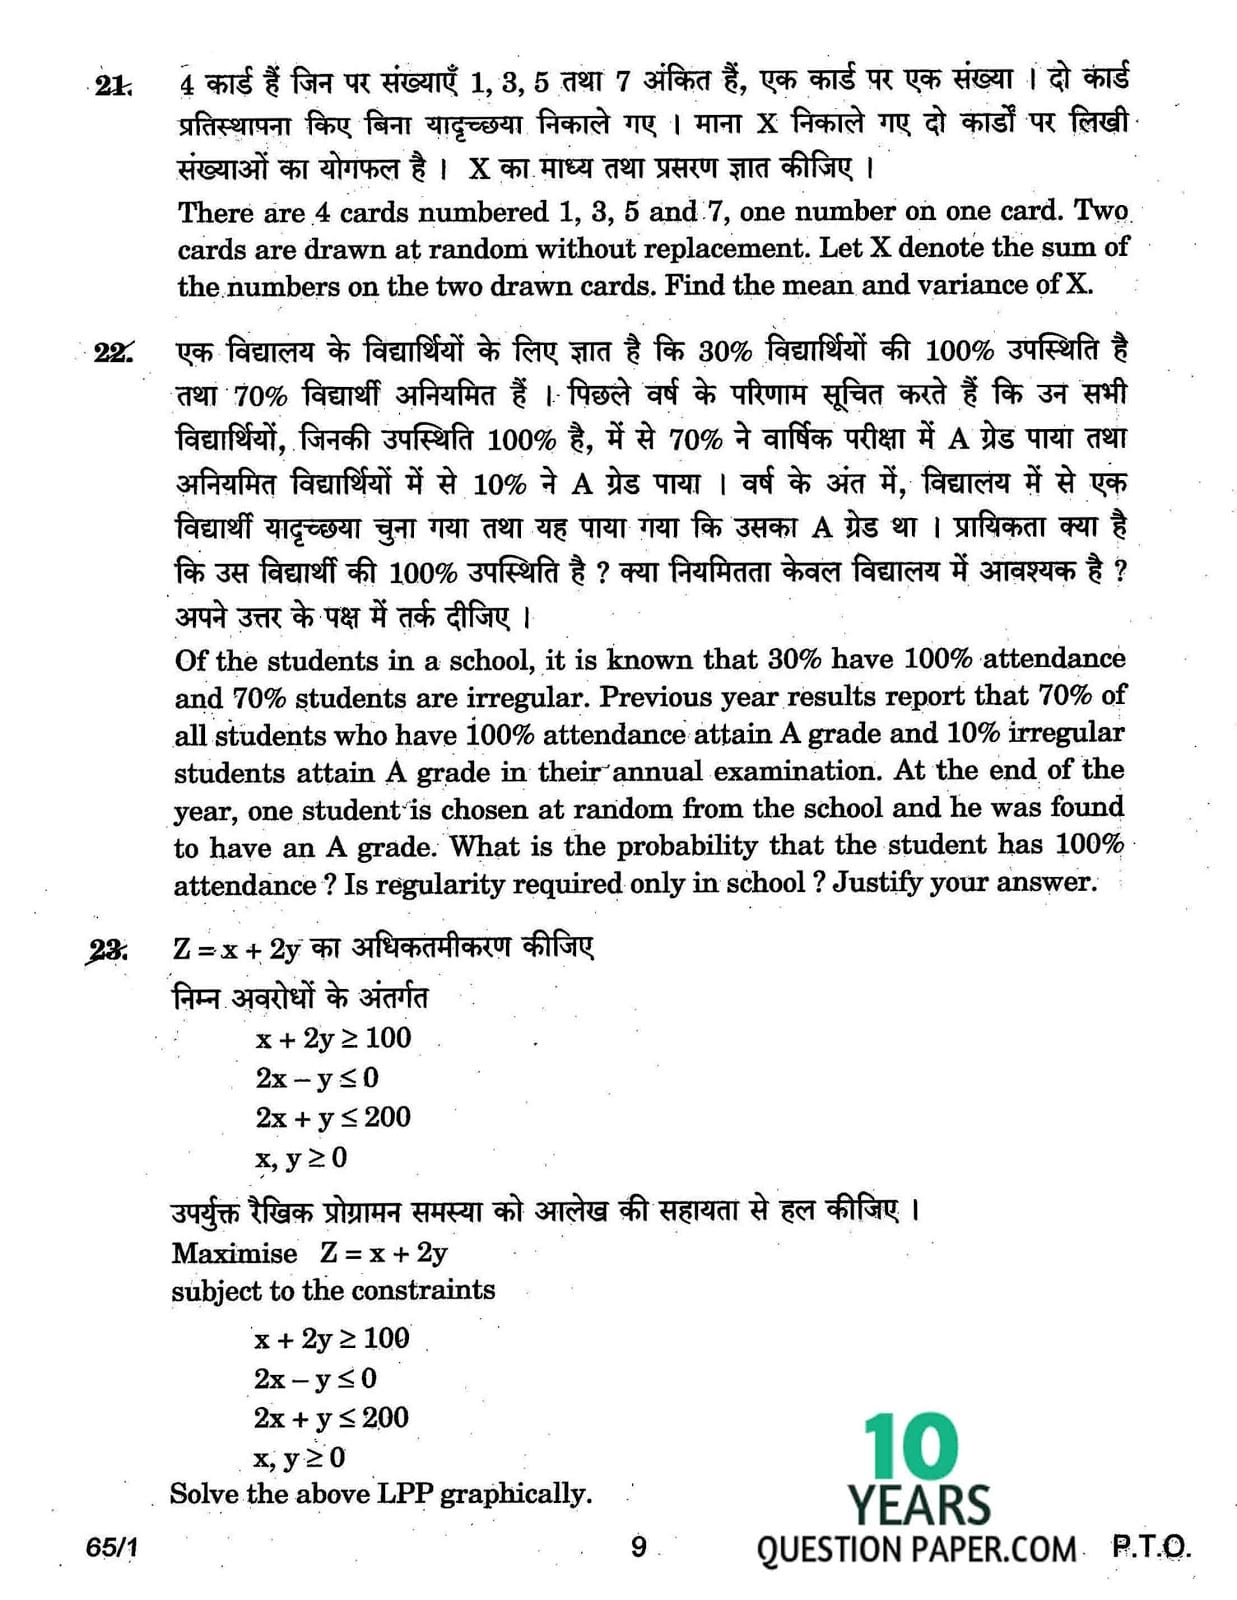 CBSE Class 12 Mathematics 2017 Question Paper